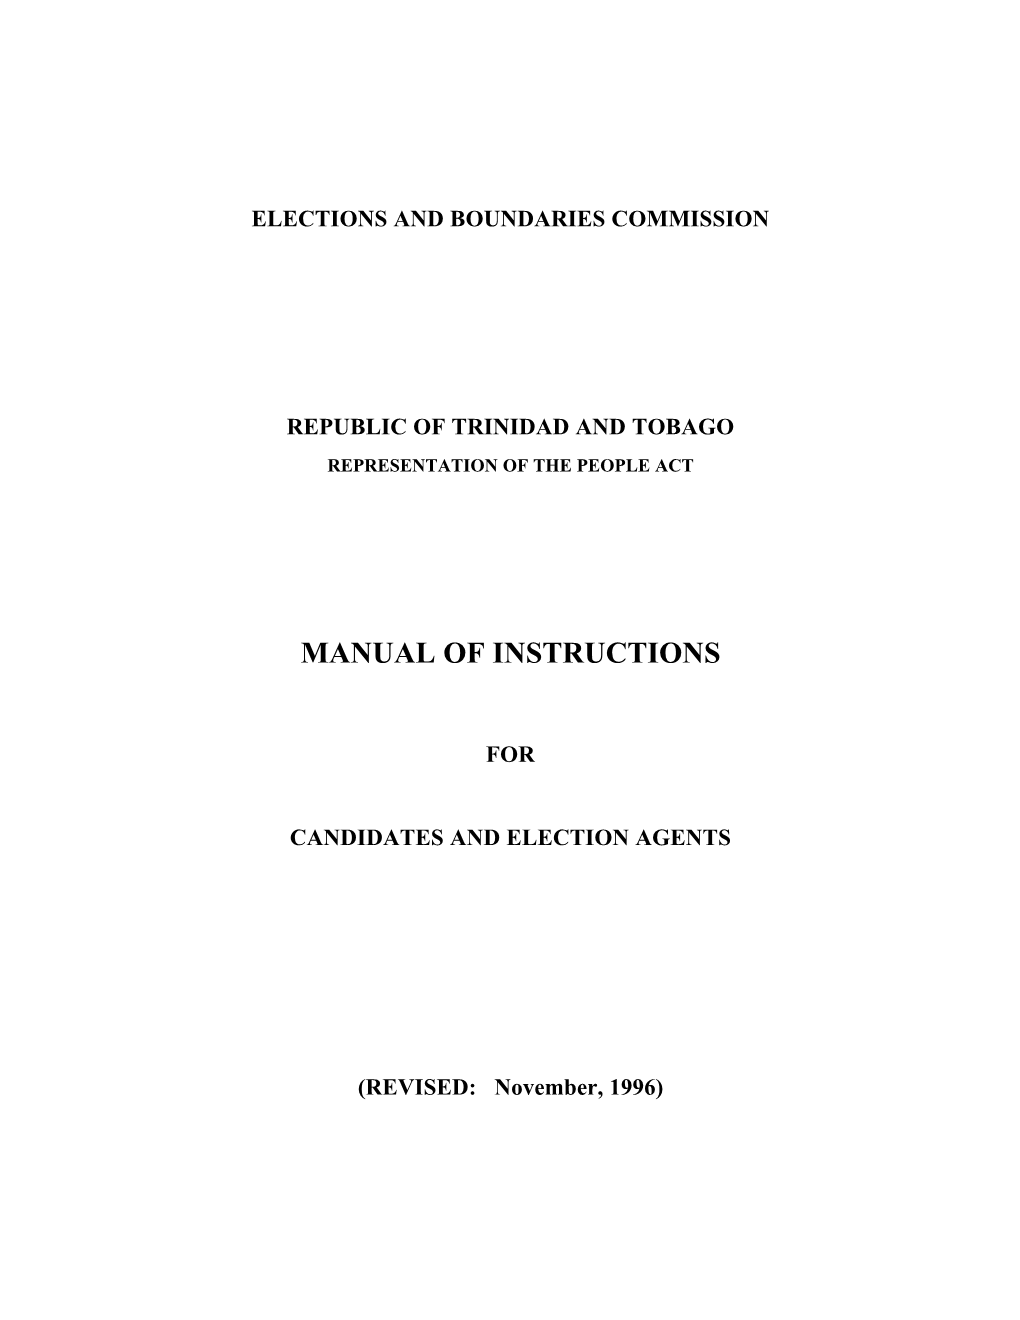 Candidates/Election Agents Manual, Trinidad and Tobago